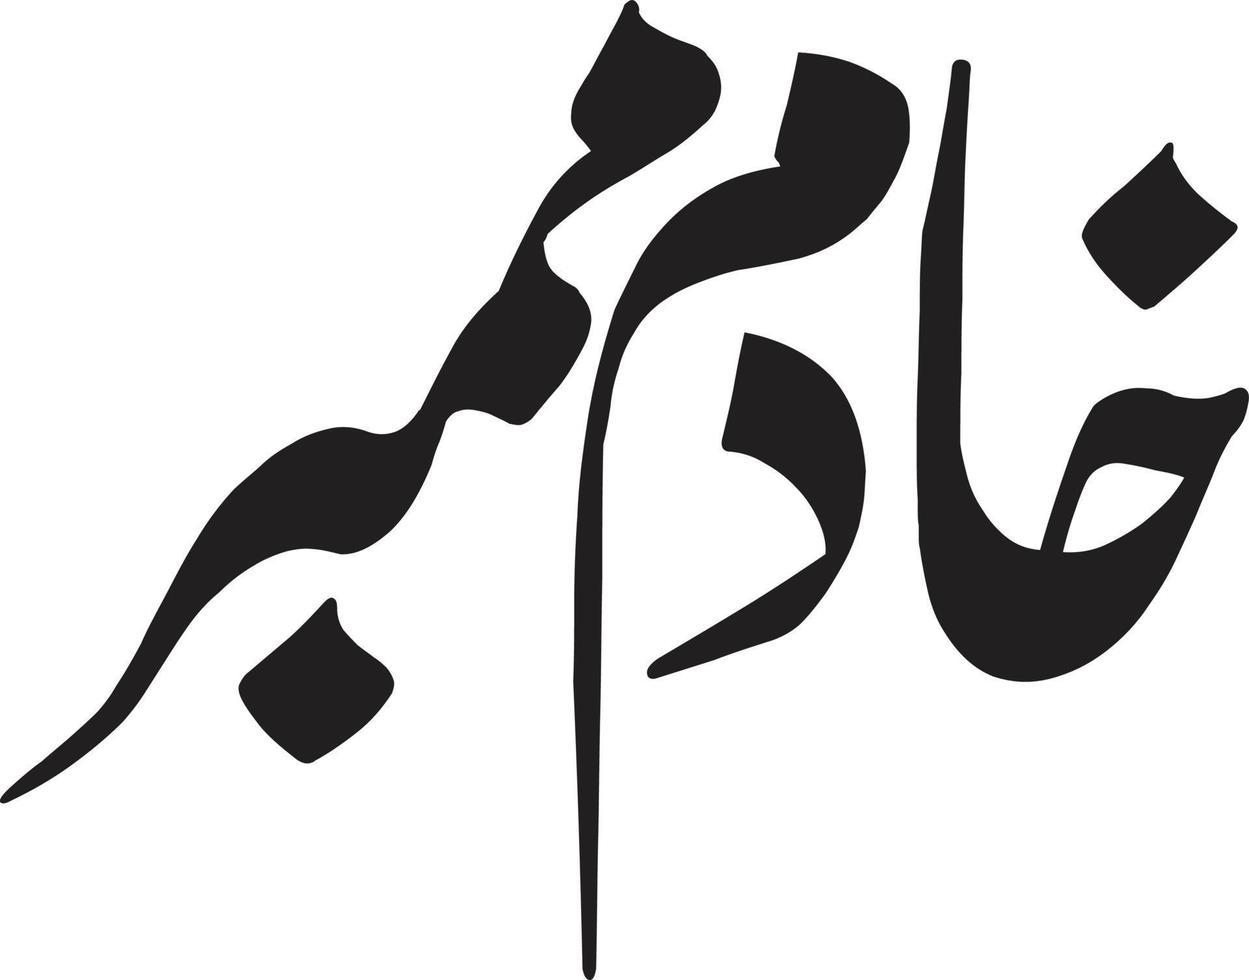 membre khadem calligraphie arabe islamique vecteur gratuit